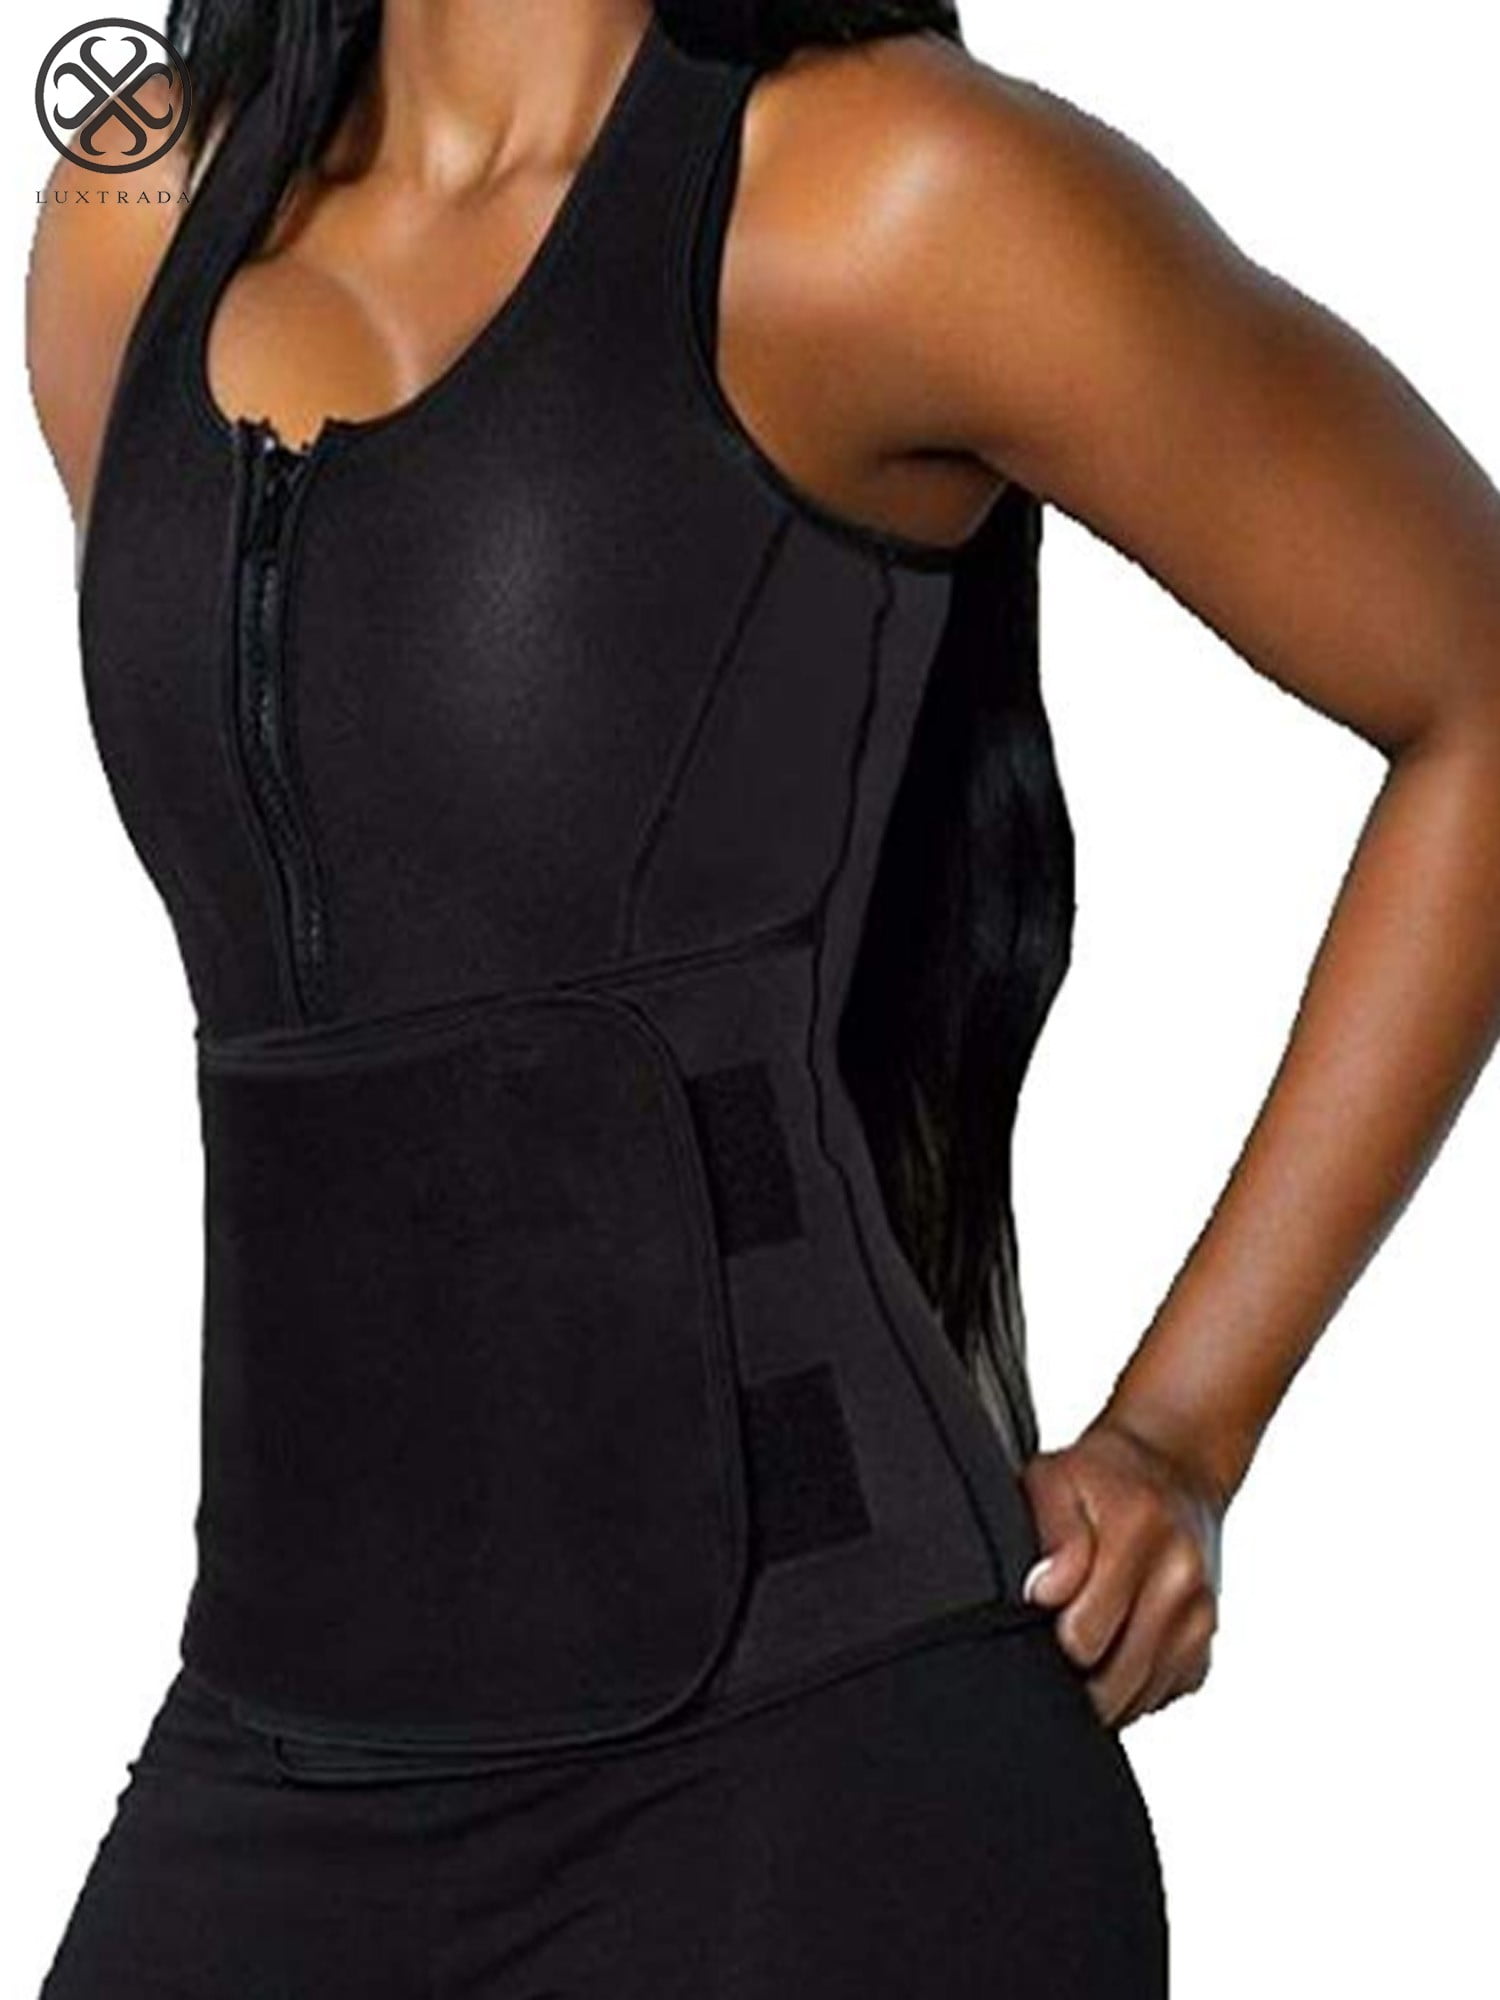 Women Waist Trainer Vest Gym Slimming Adjustable Sauna Sweat Belt Body Shaper US 